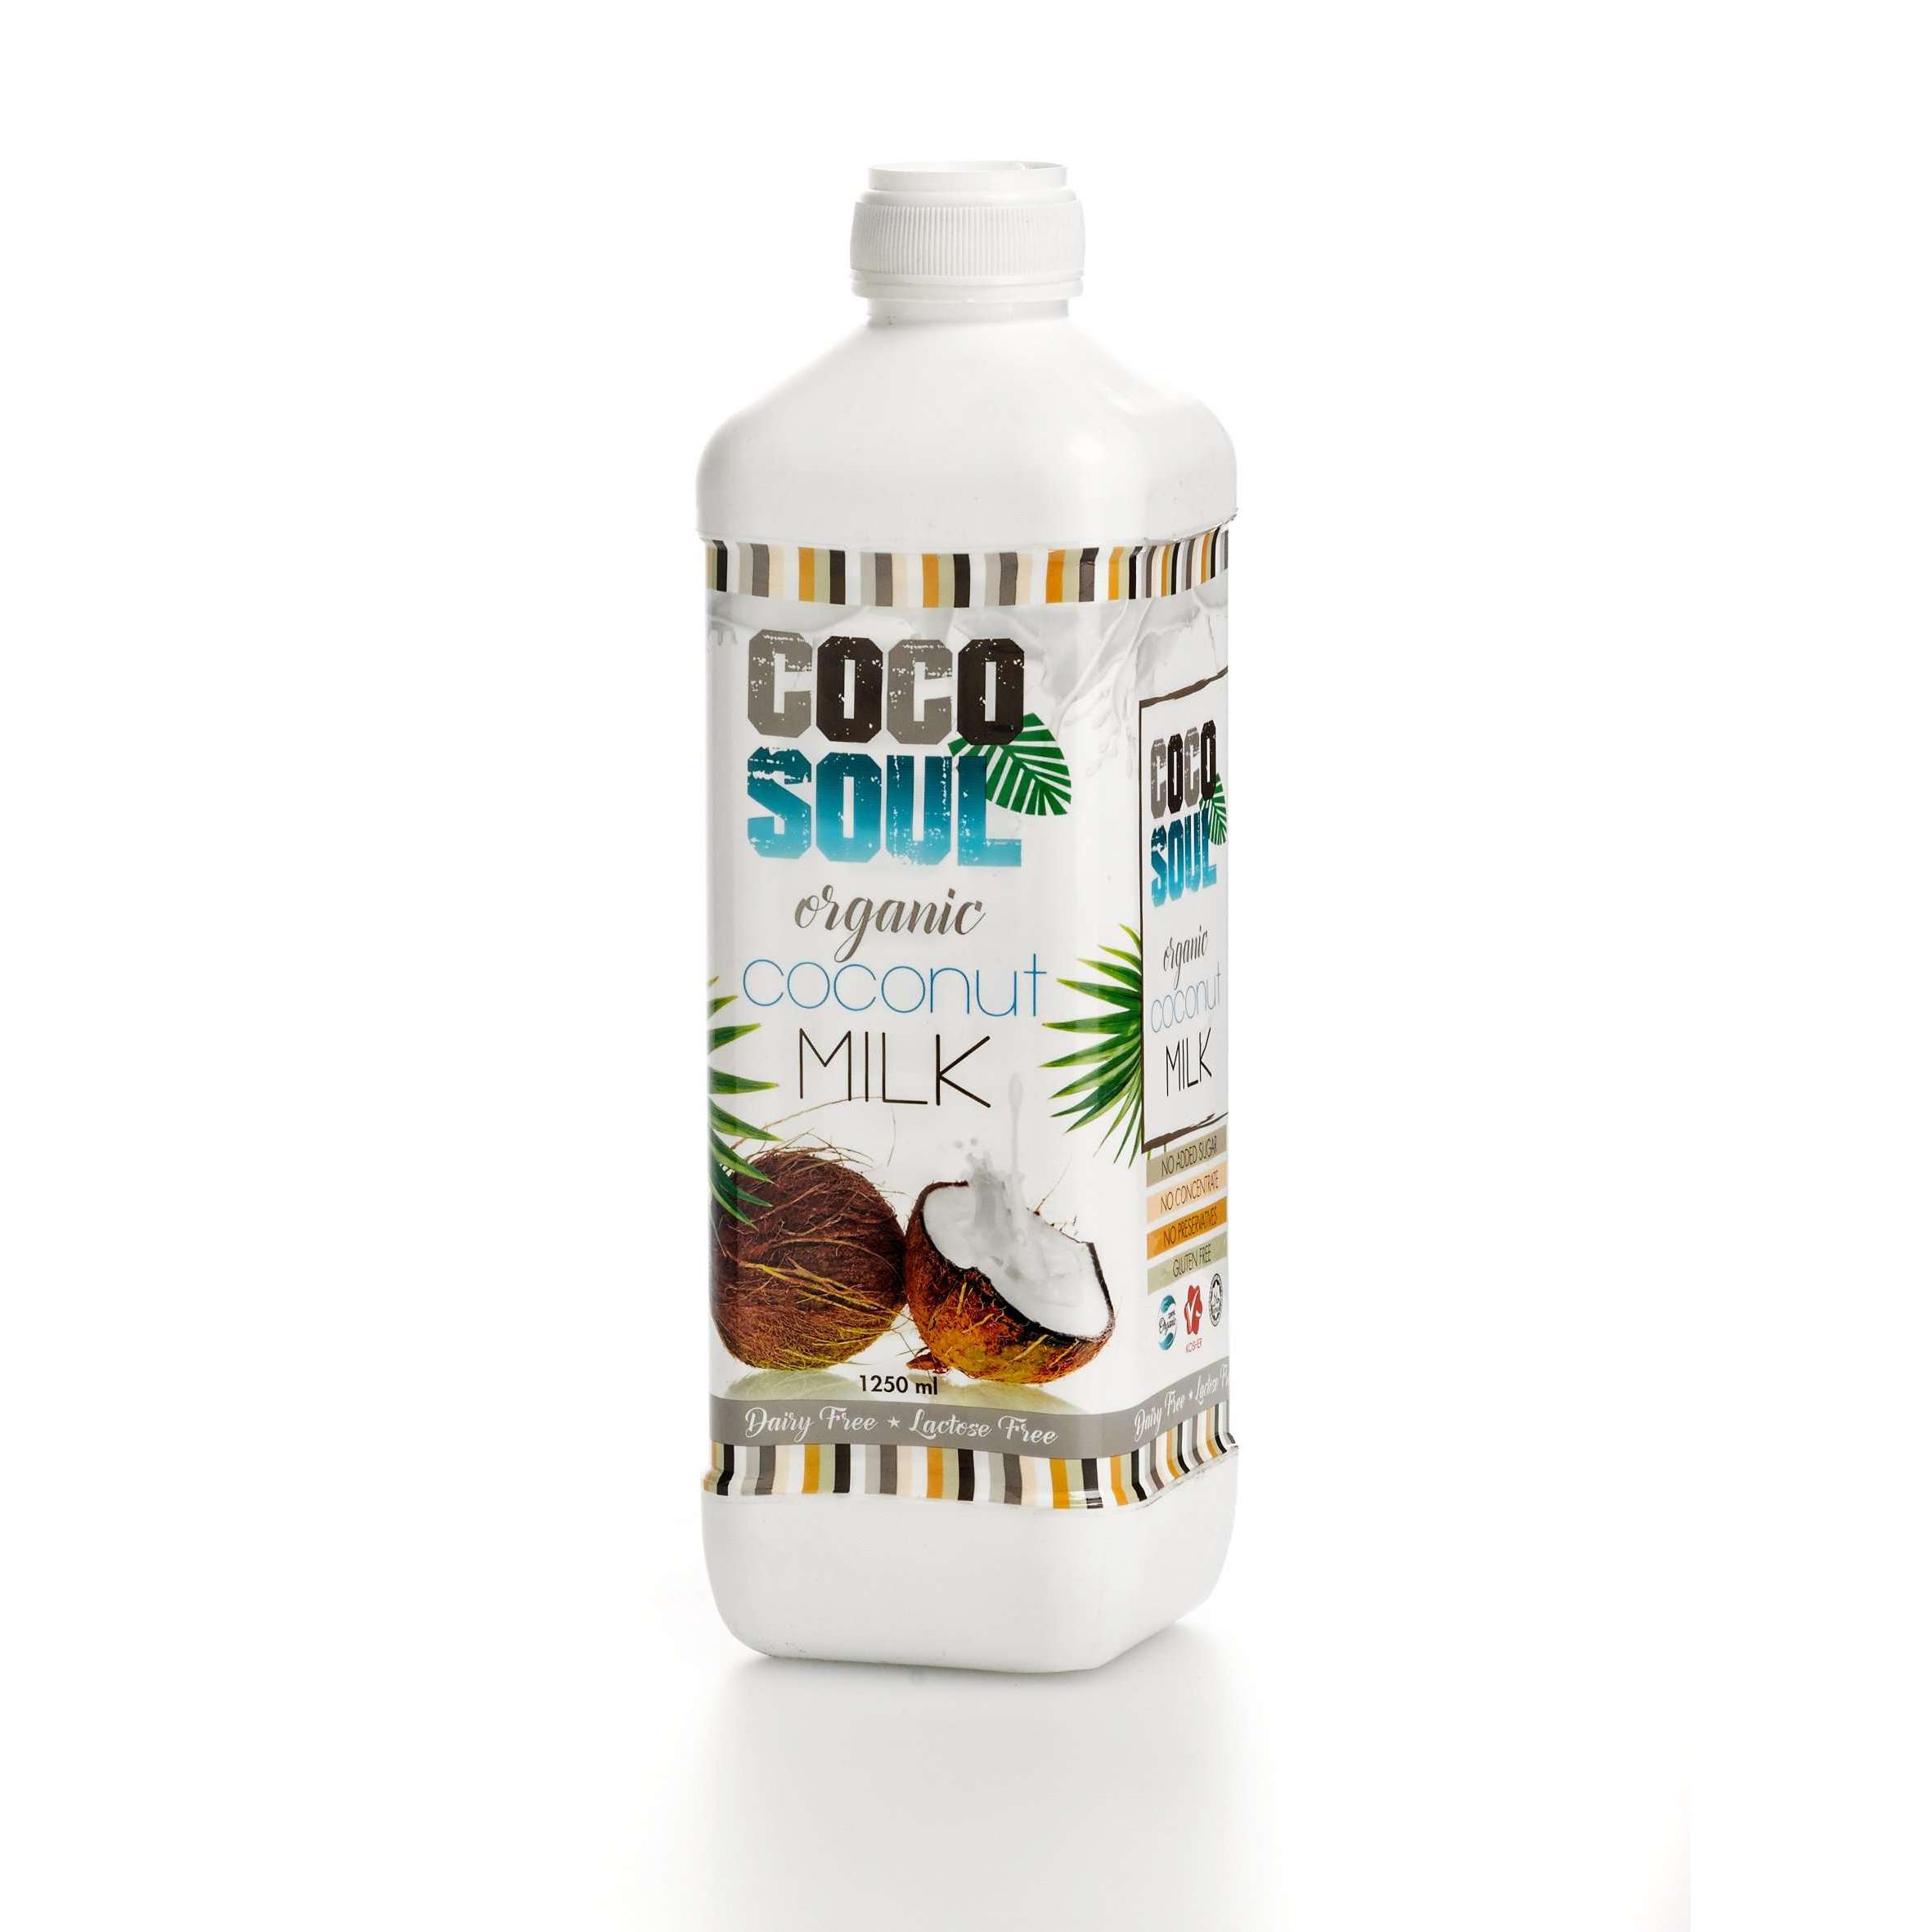 Coco Soul Coco Soul Organic Coconut Milk